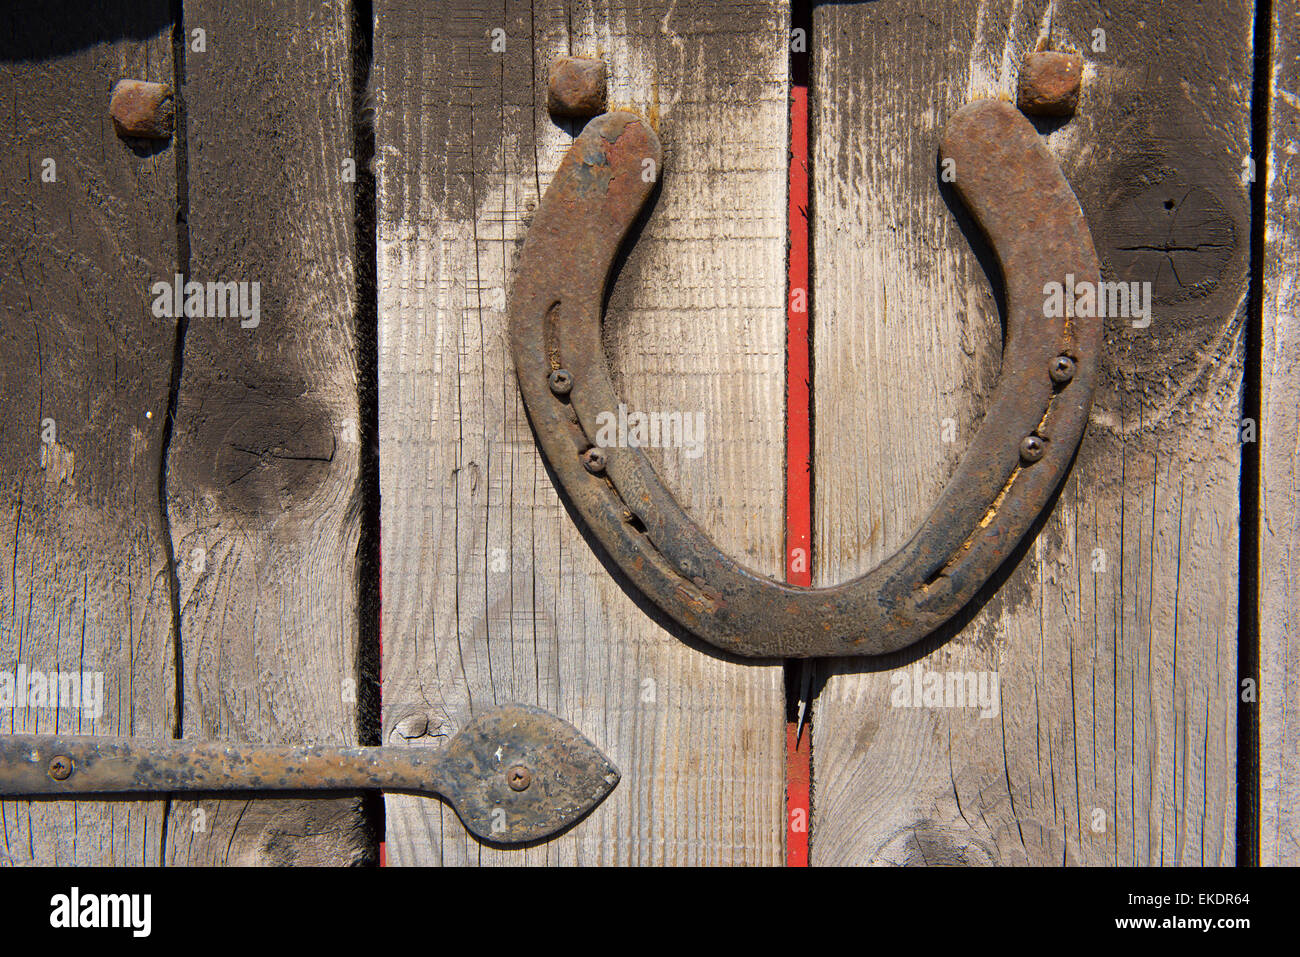 Old horseshoe mounted on door Stock Photo